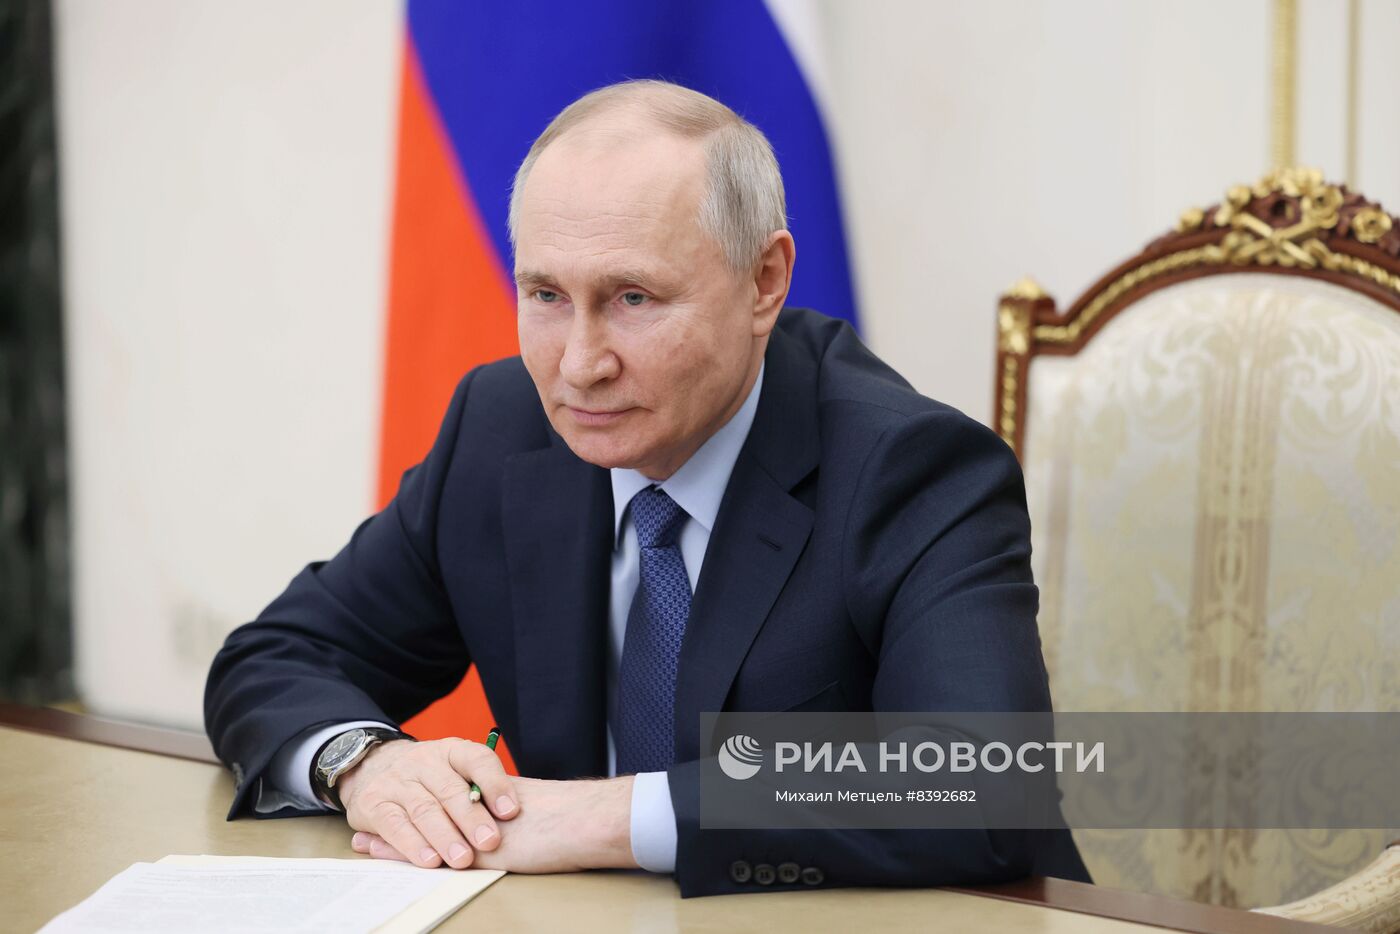 Президент РФ В. Путин провел встречу с врио главы Смоленской области В. Анохиным